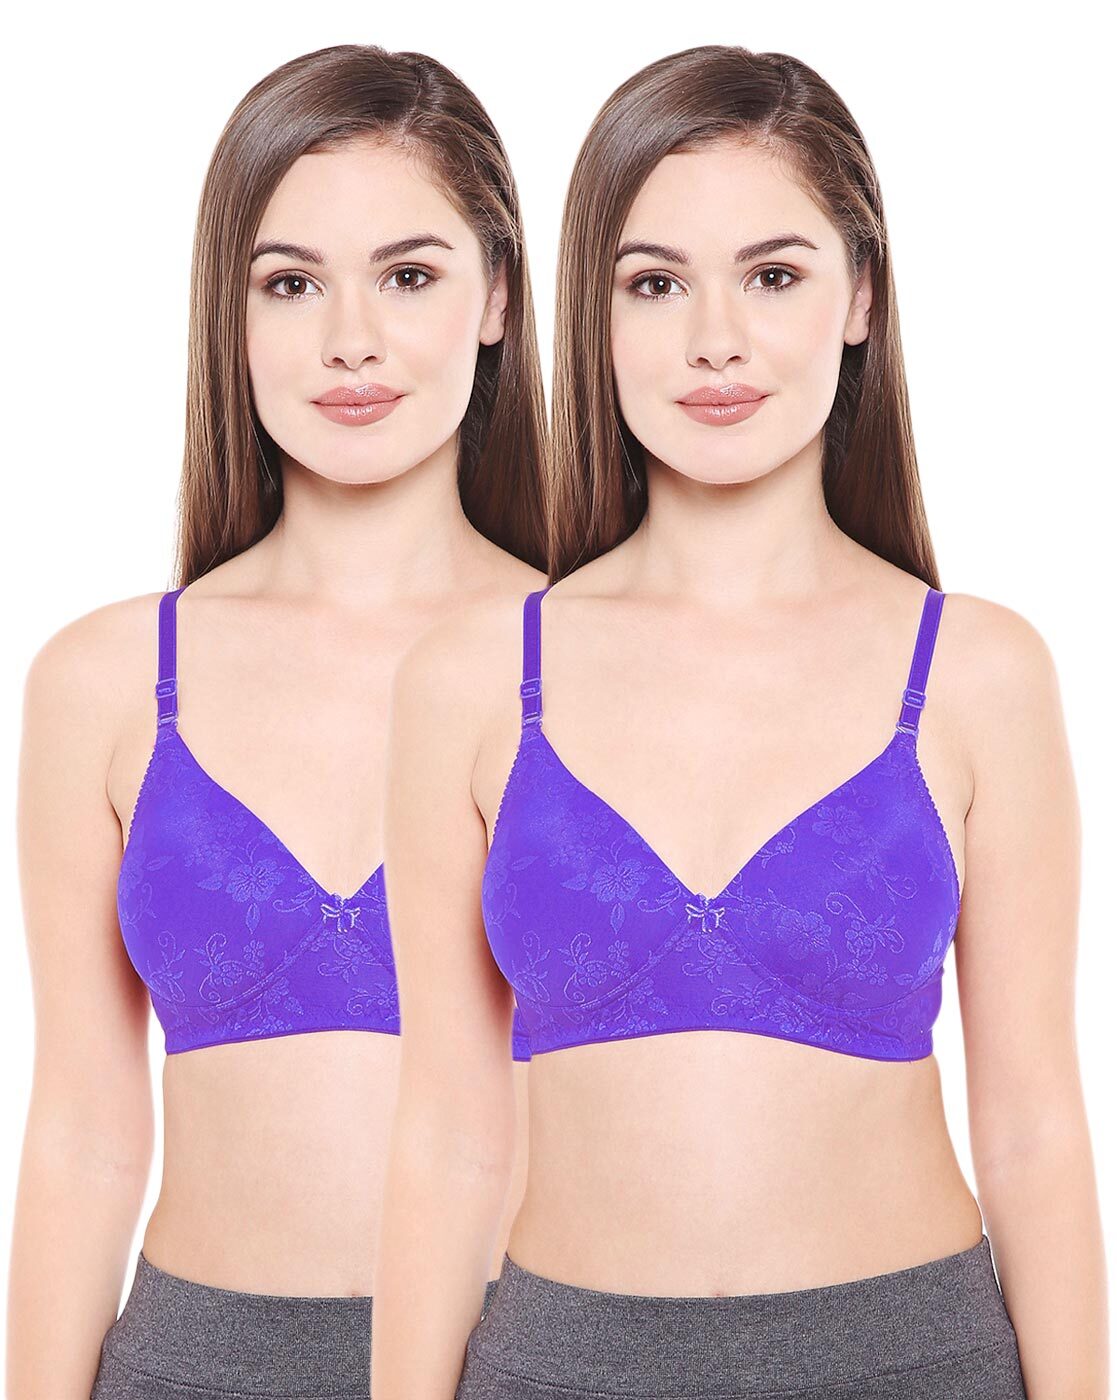 Buy Purple Bras for Women by BODYCARE Online